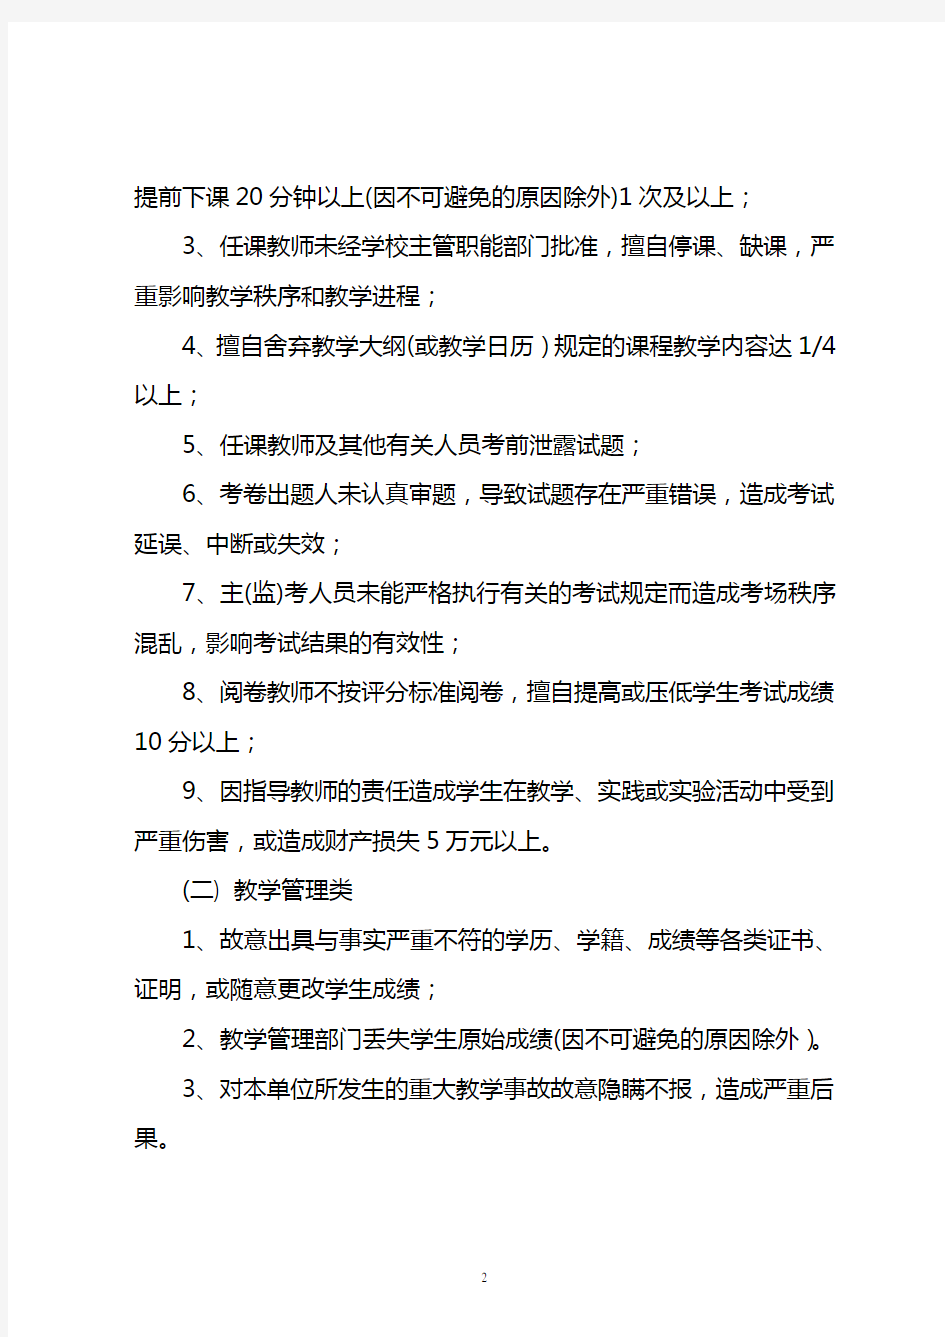 武汉科技大学教学事故认定与处理暂行办法汇编